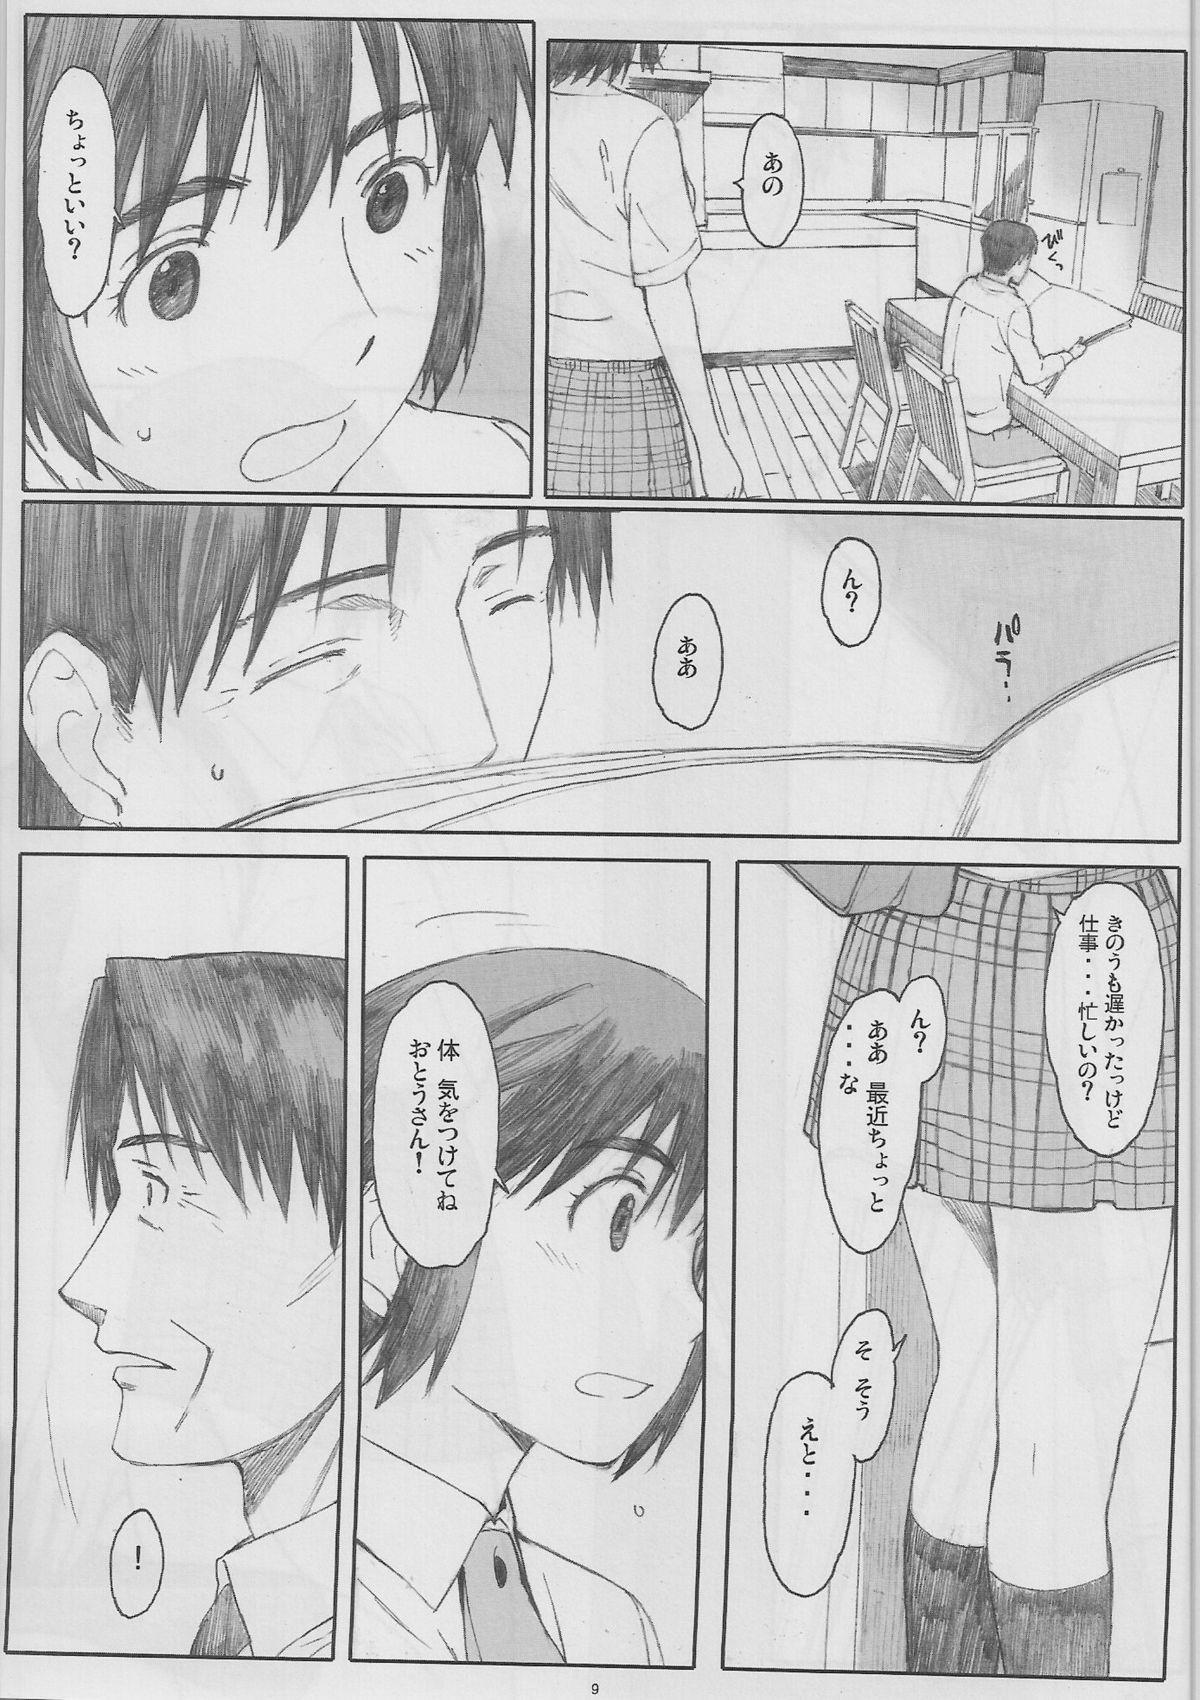 Nude Natukaze! 6 - Yotsubato Metendo - Page 9